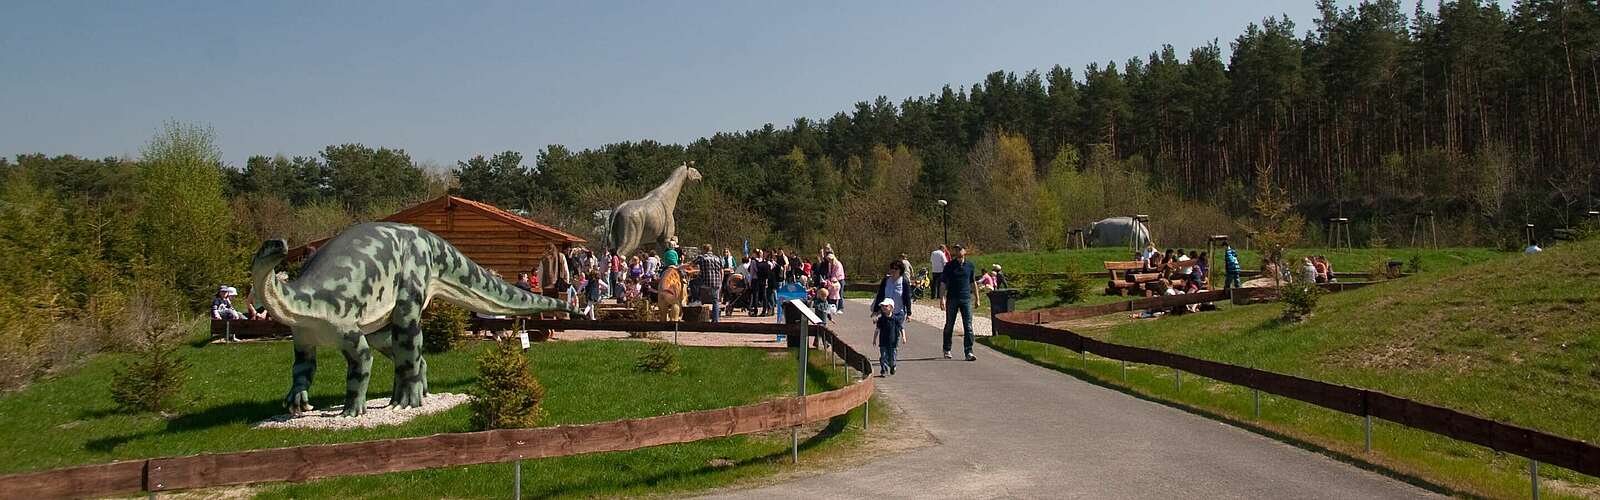 Besucher im Dinosaurierpark Germendorf,
        
    

        
            Foto: CHICKENONSPEED